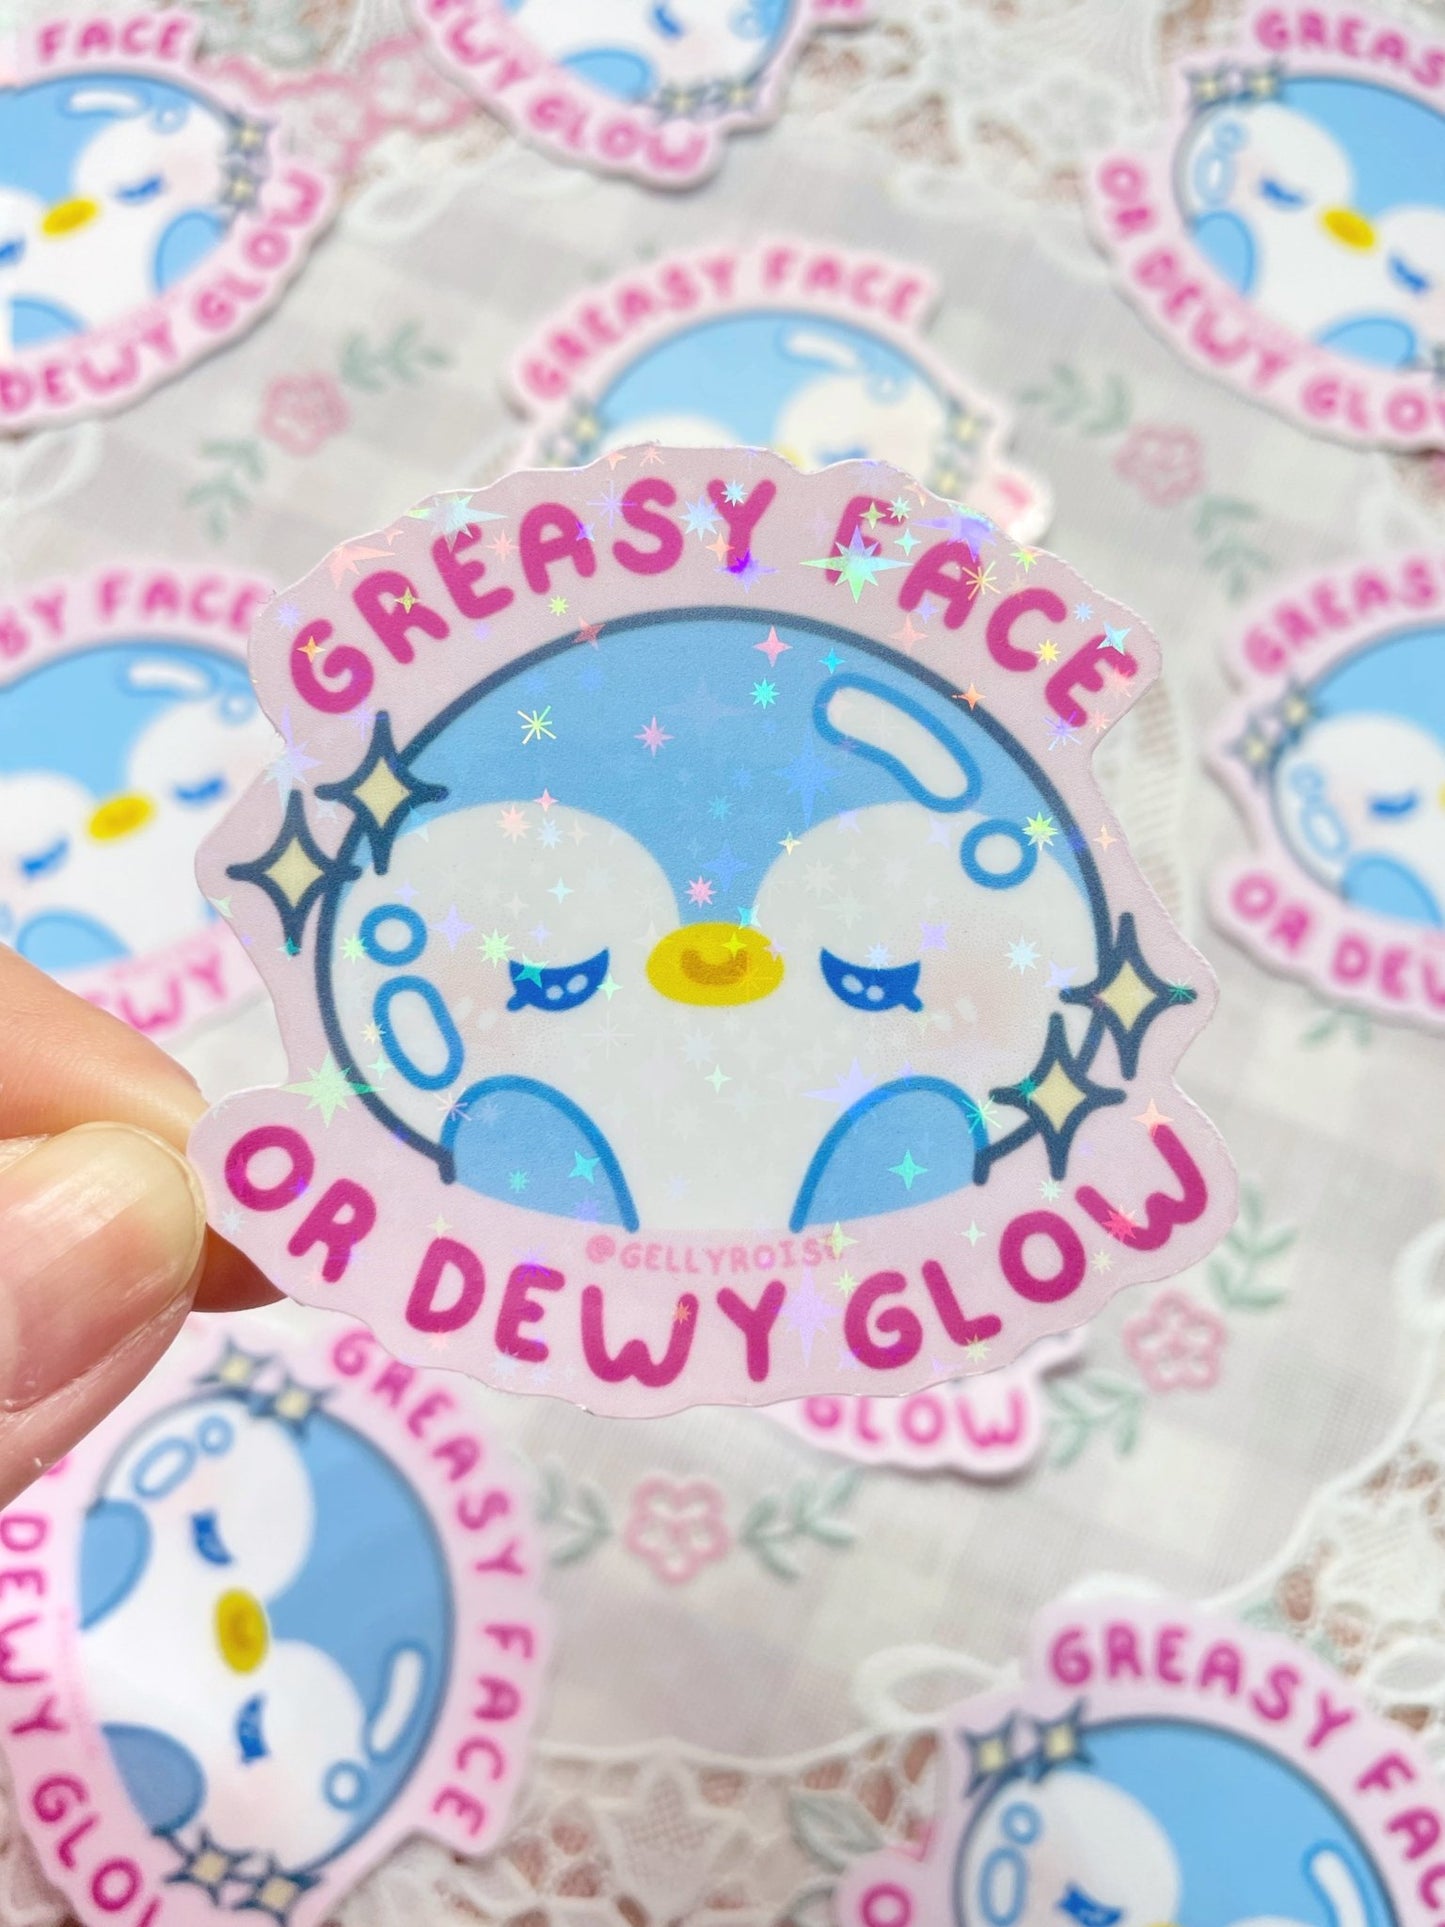 NEW Greasy Face or Dewy Glow Waterproof Sticker - Gelly Roise